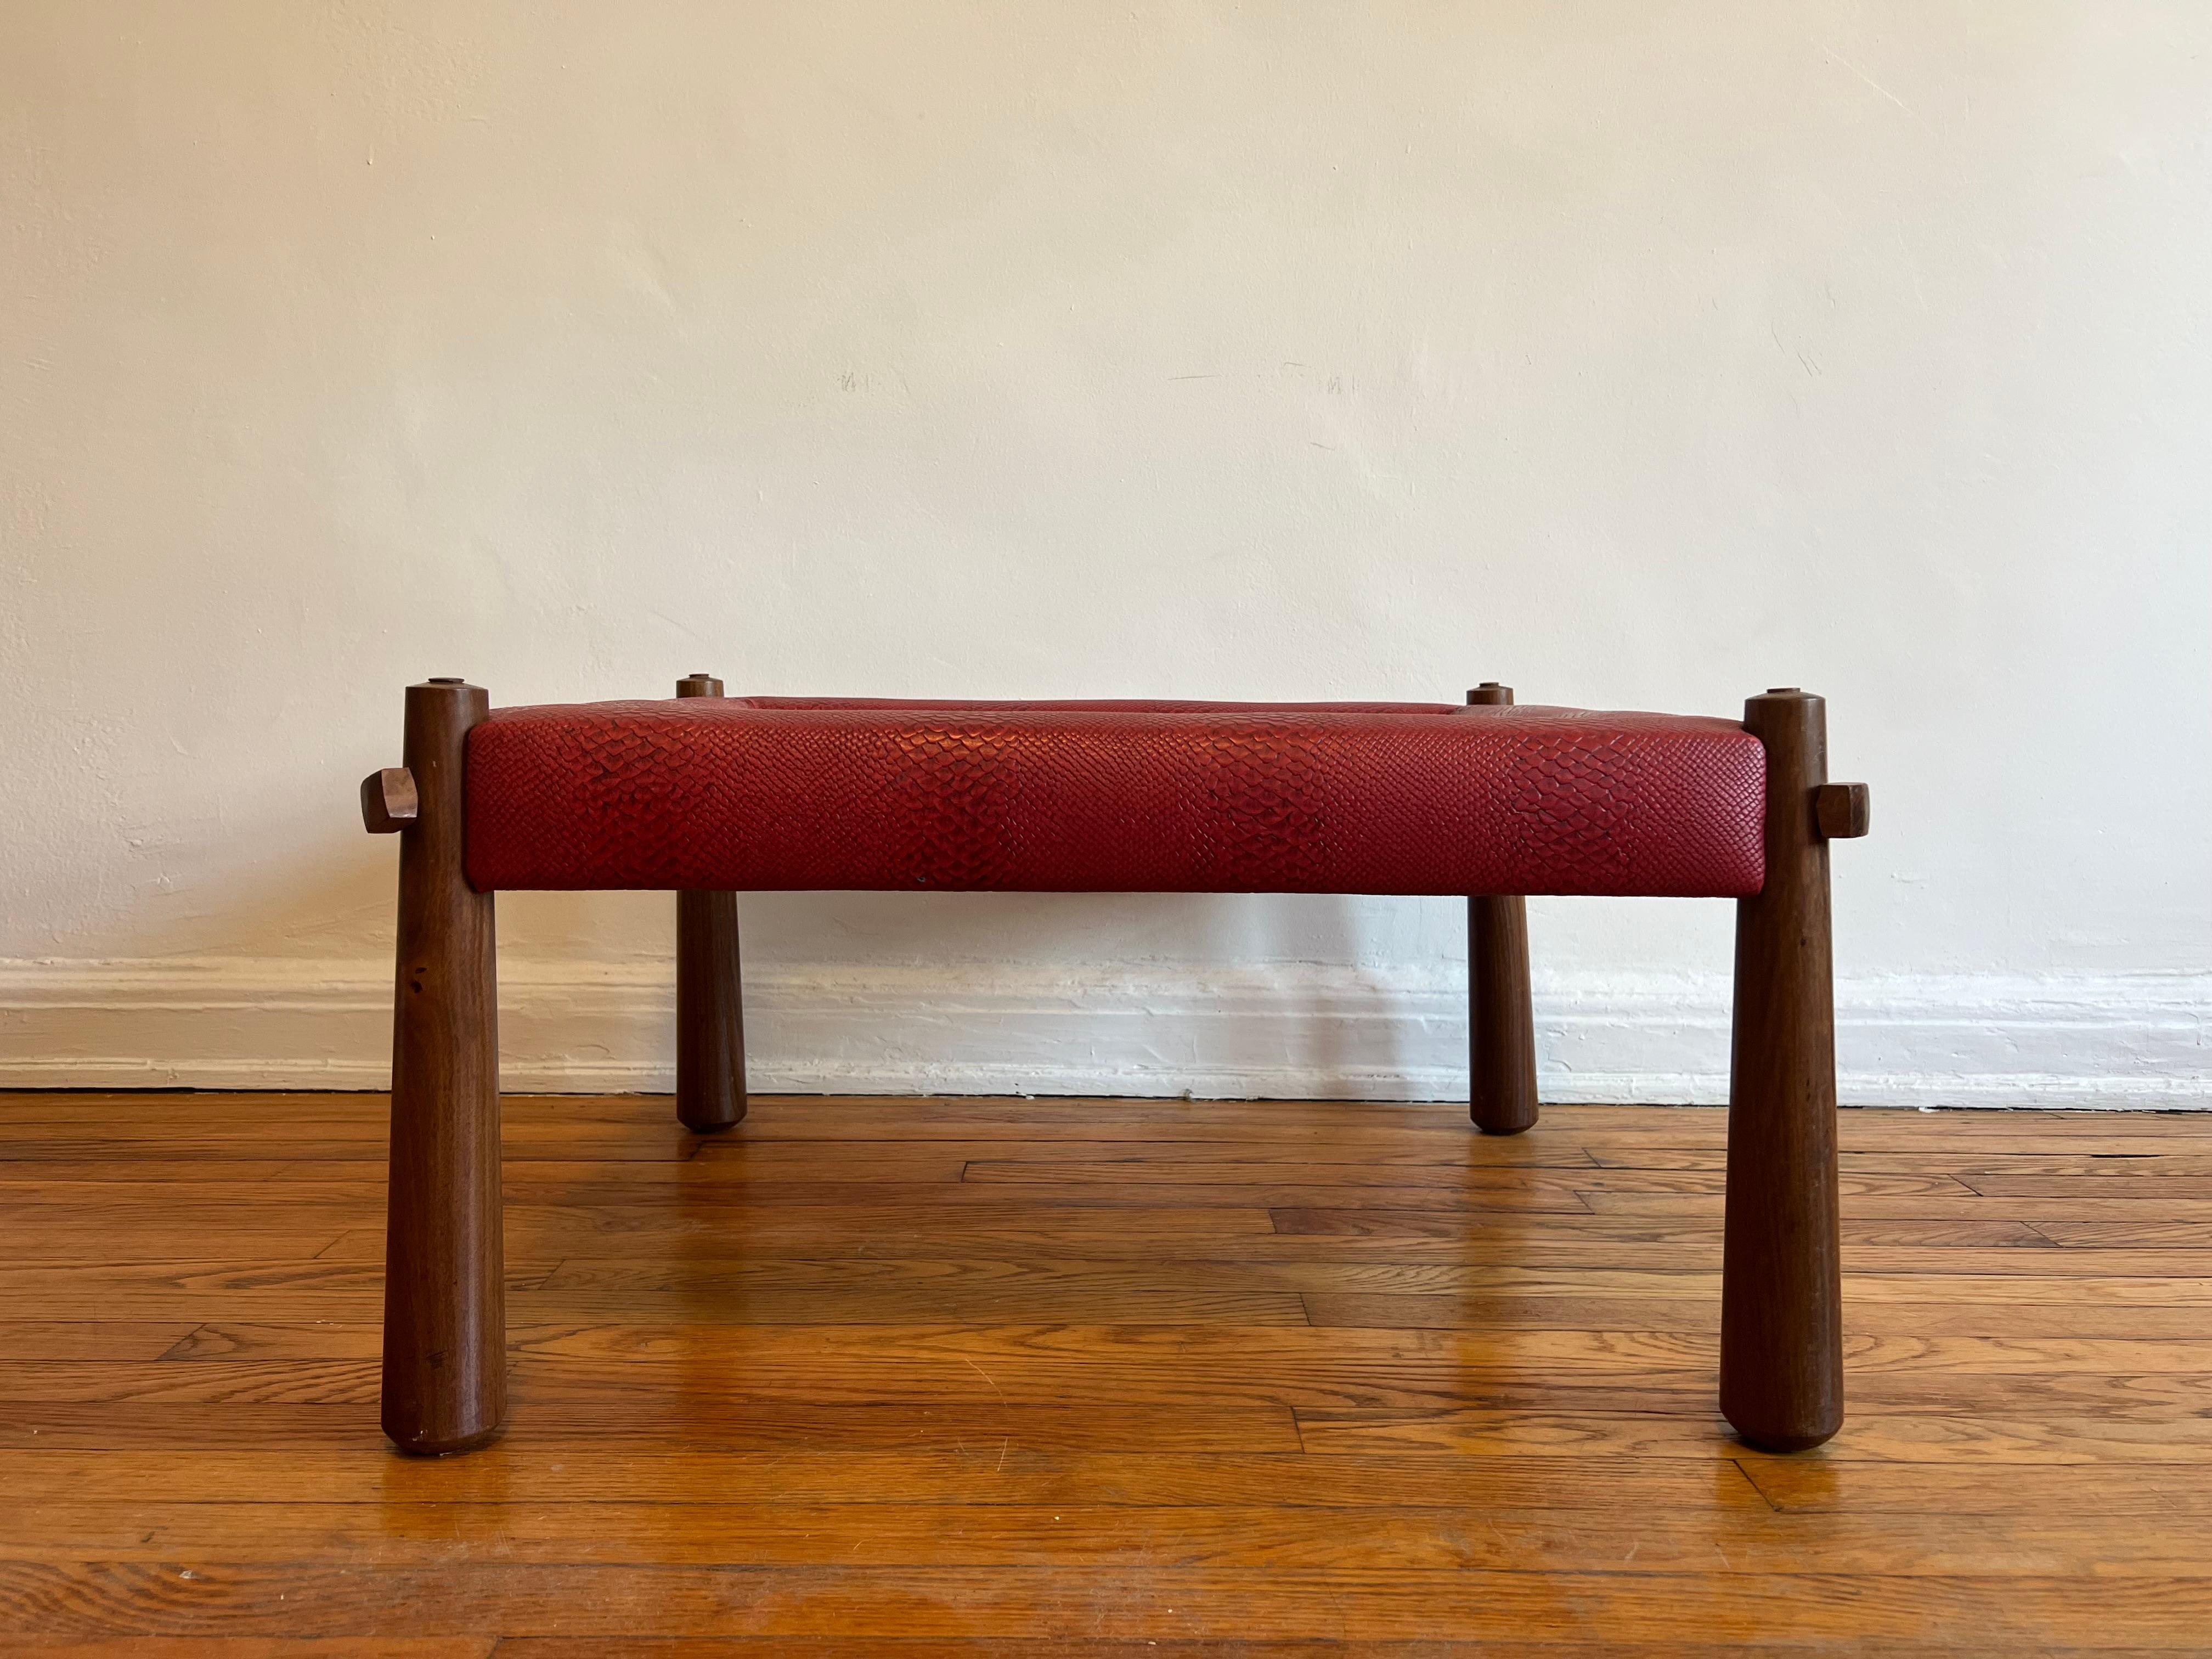 Schöner Couchtisch aus Palisanderholz aus der MP-81 Sitz- und Tischkollektion des famosen brasilianischen Möbeldesigners Percival Lafer. 

Der Couchtisch besteht in der Regel aus einer Glasplatte. Unsere besondere Variante zeichnet sich durch eine